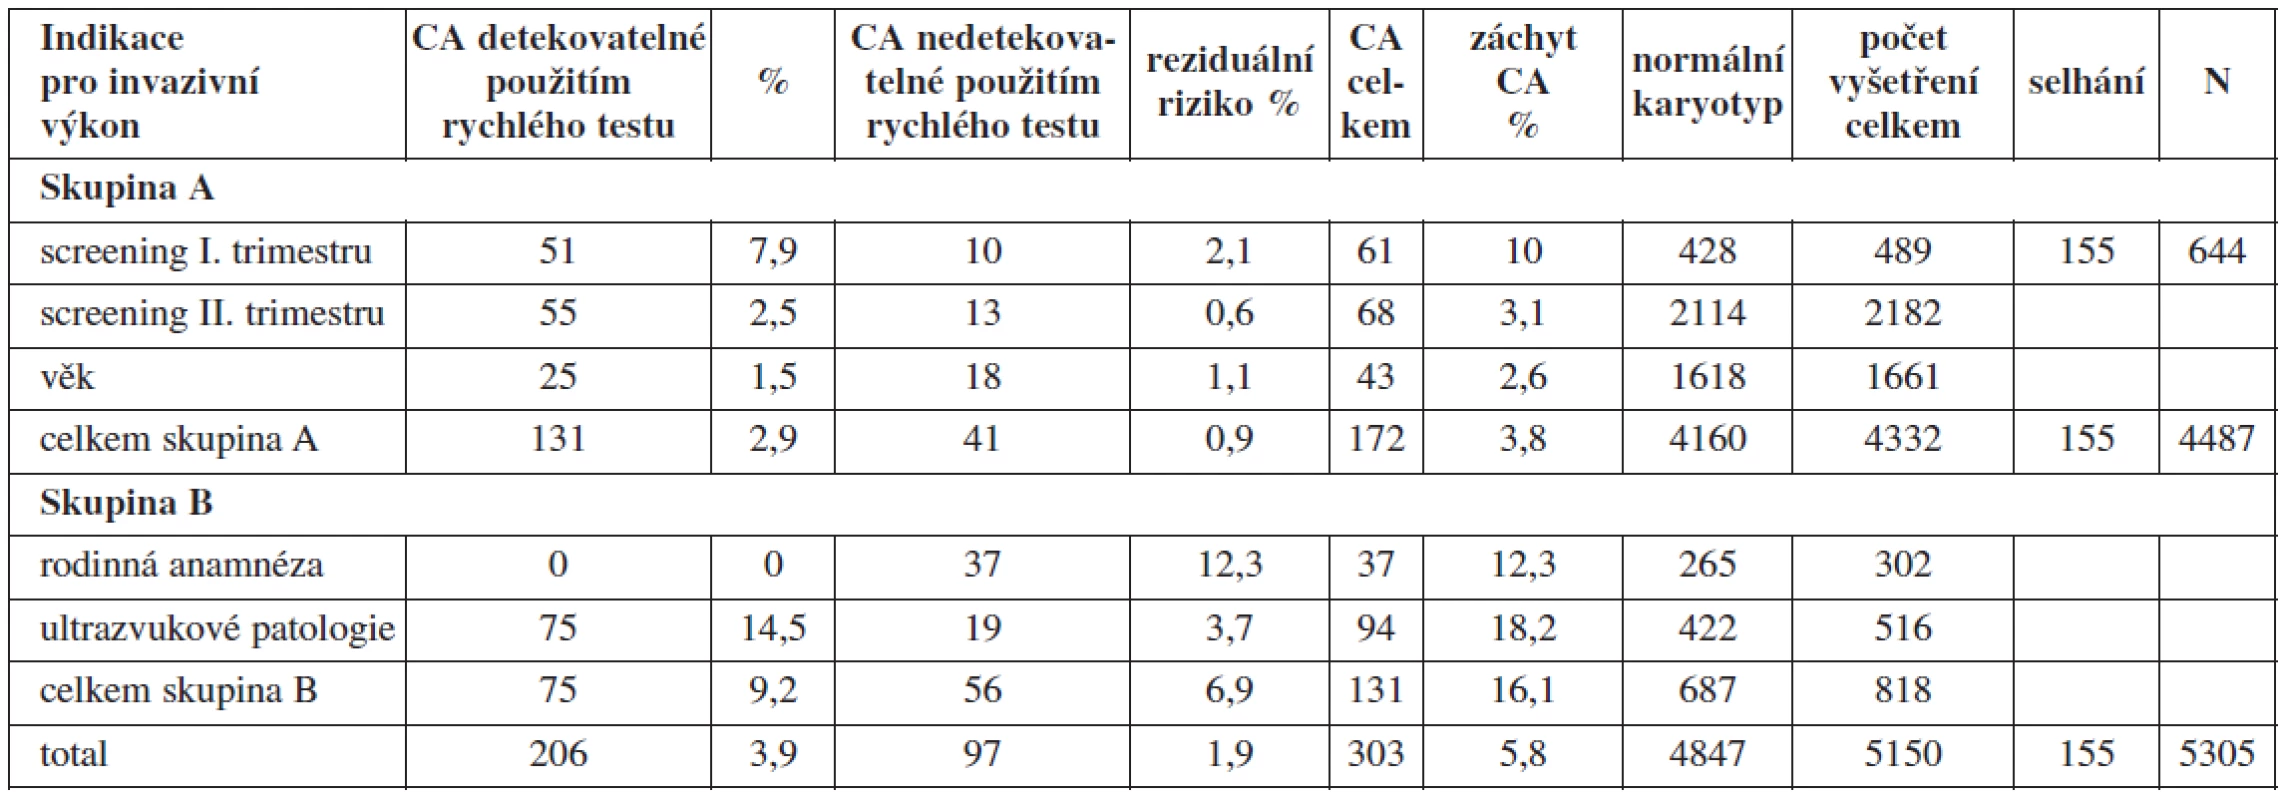 Frekvence výskytu chromozomálních aberací v jednotlivých indikačních skupinách v letech 1998 - 2009